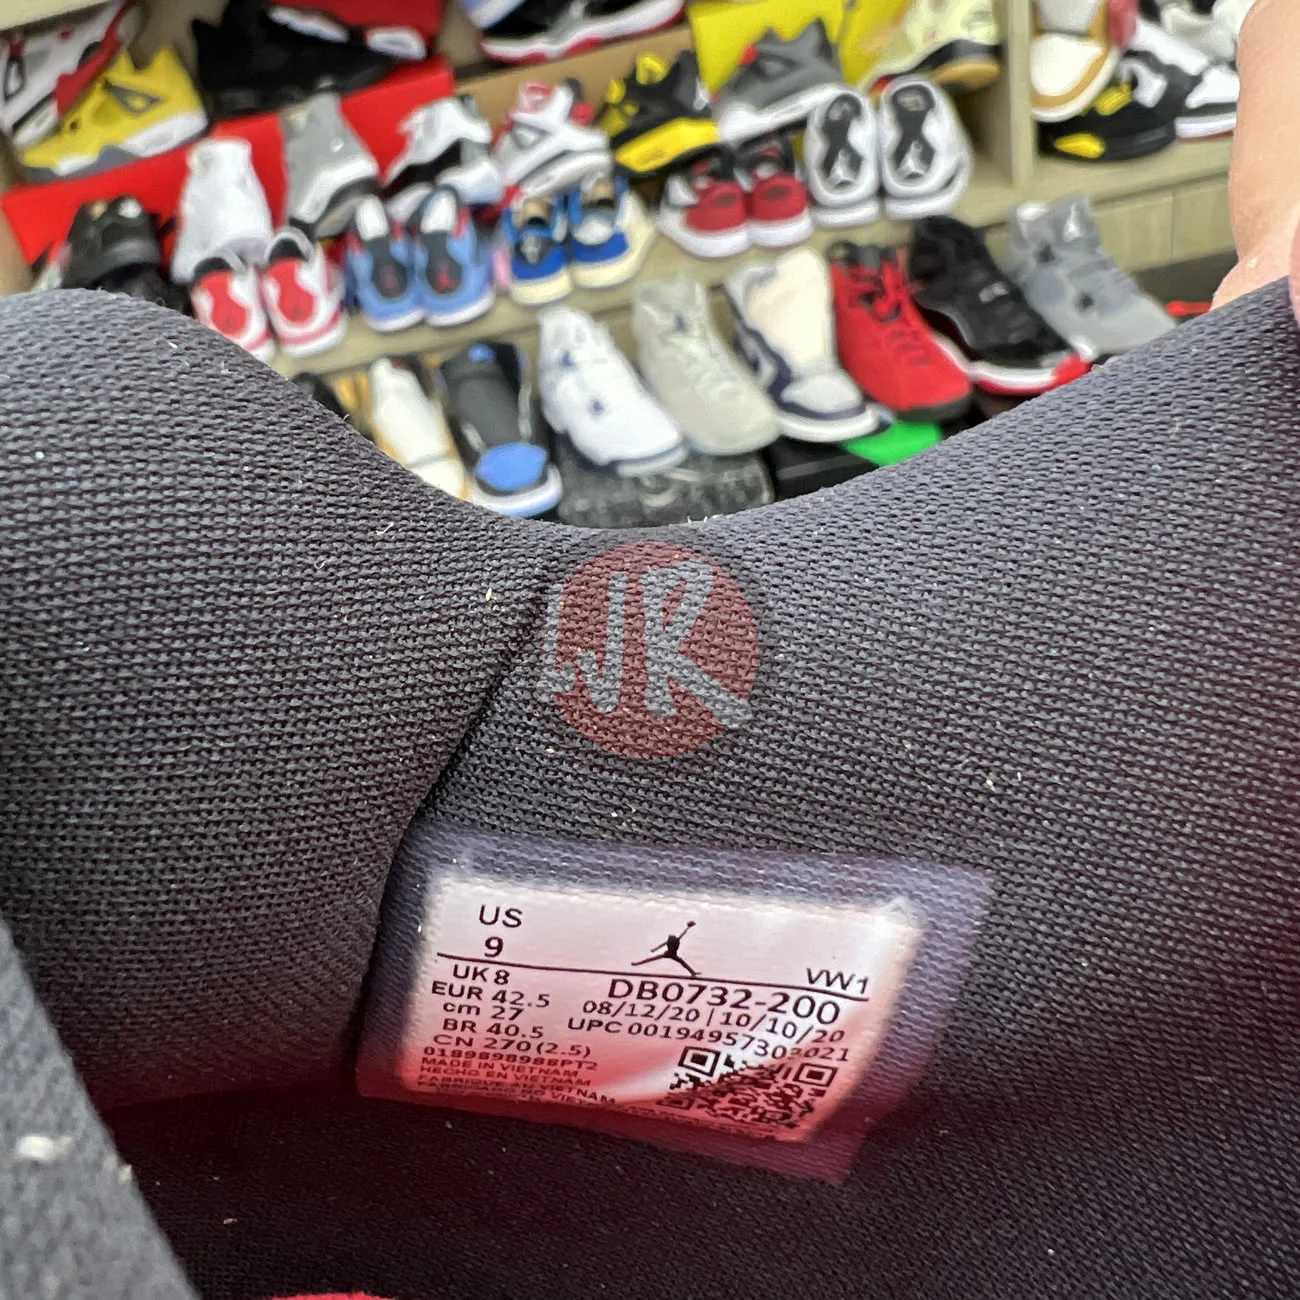 Air Jordan 4 Retro Taupe Haze Db0732 200 Ljr Sneakers (22) - bc-ljr.com